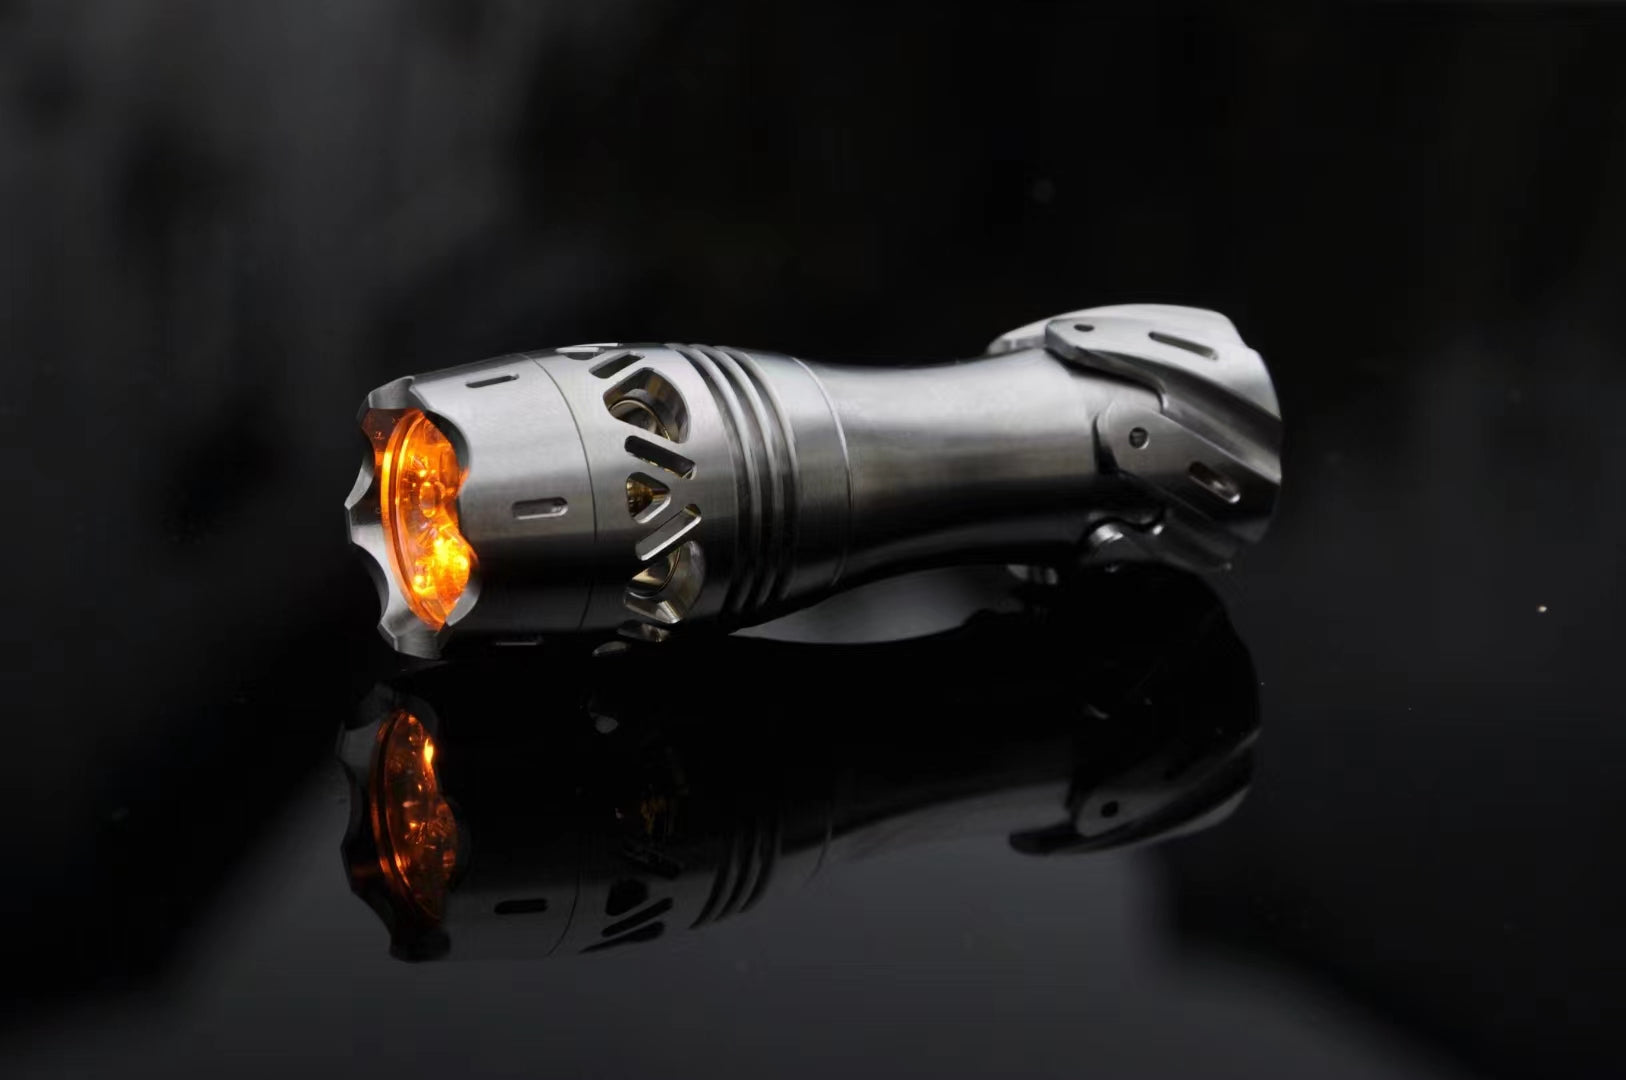 Giftglowedc Dawn TItanium Nichia 1100lm EDC Flashlight with Spinner